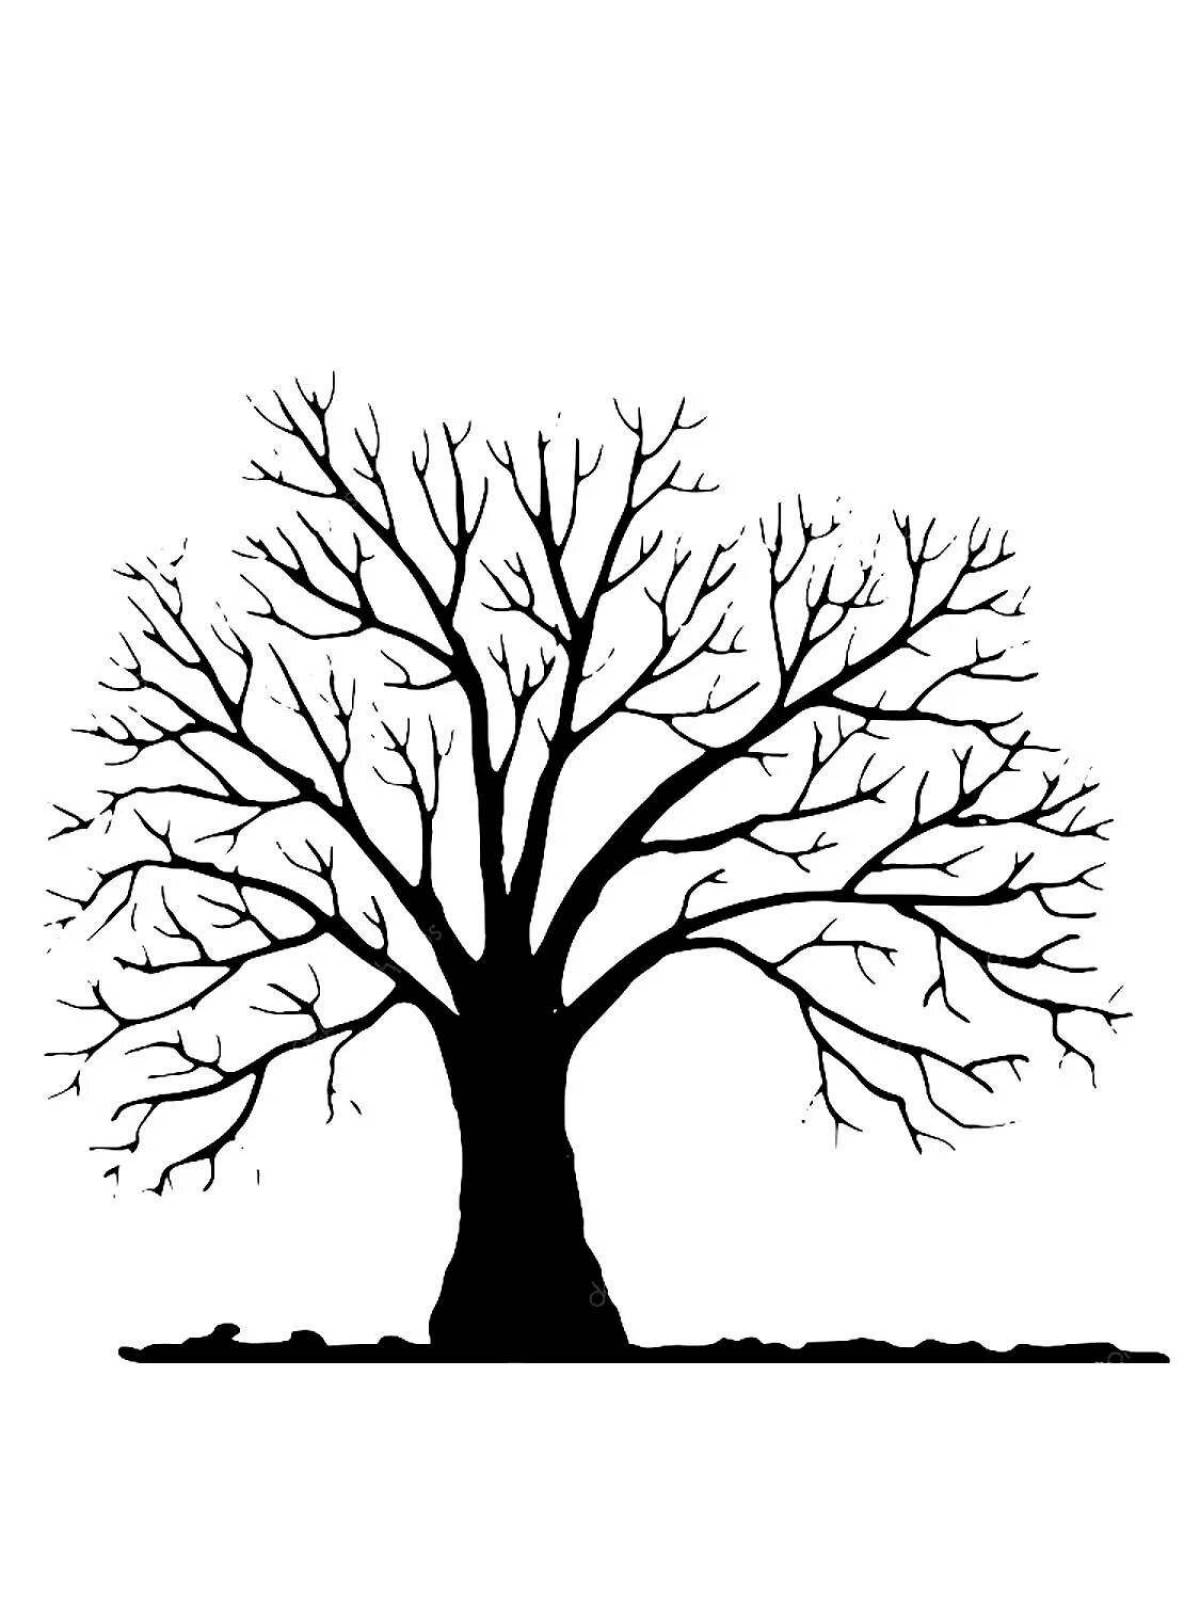 Игривый рисунок раскидистого дерева